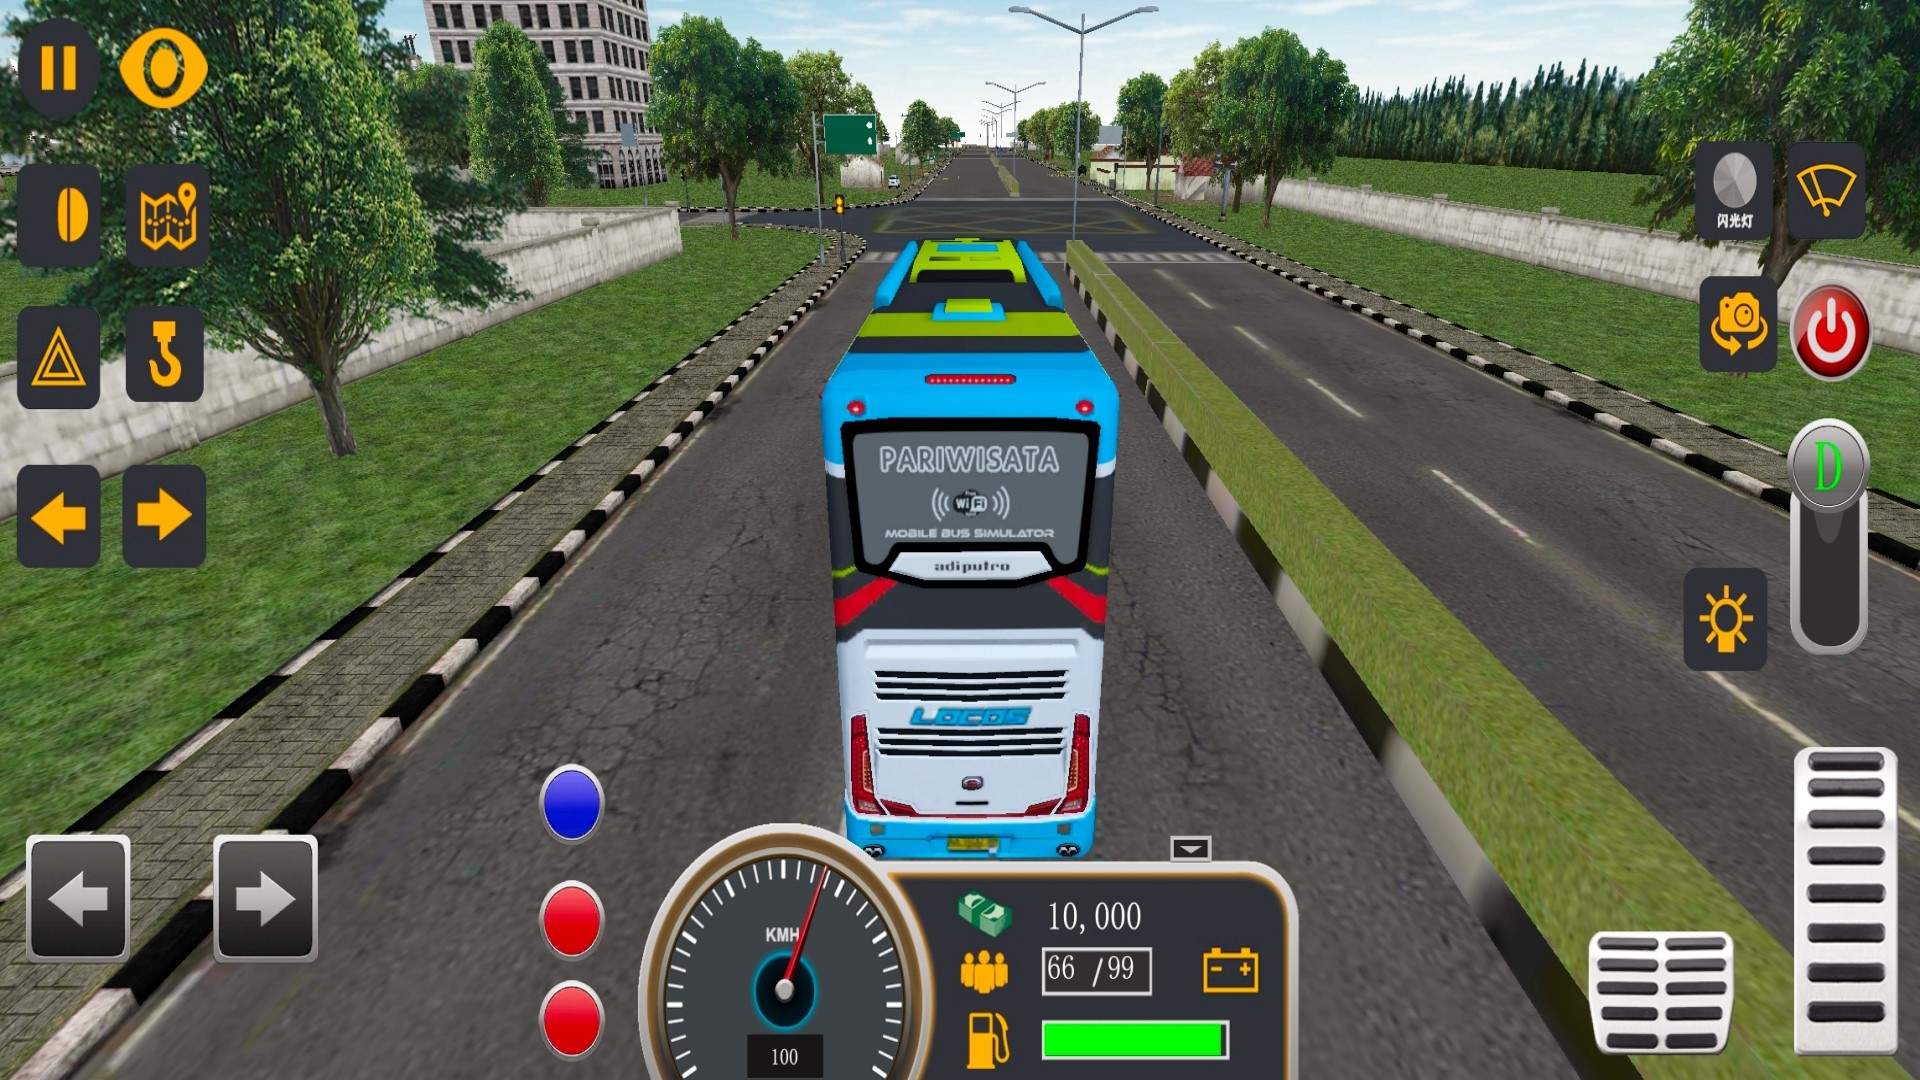 模拟驾驶公交大巴游戏